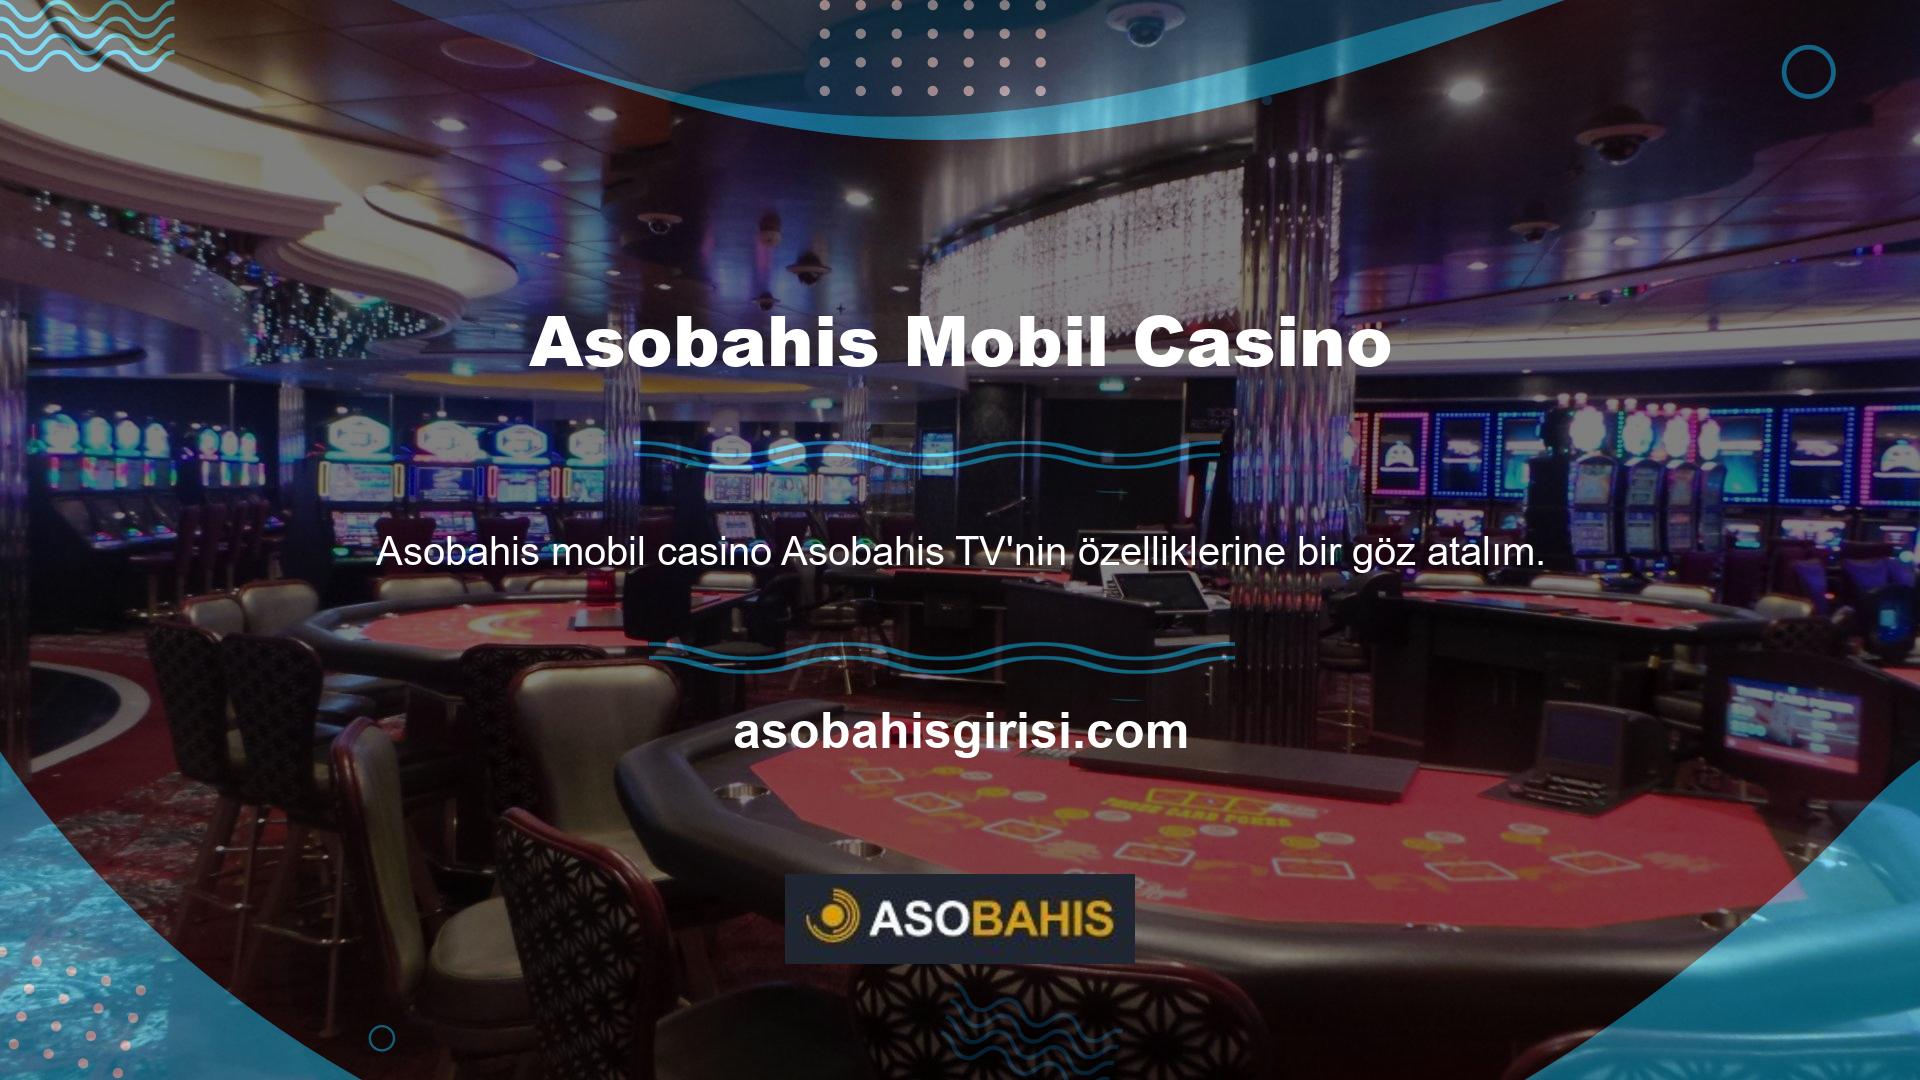 Bu özellik, Asobahis Game mobil casino web sitesi üzerinden spor etkinliklerini takip etmenizi sağlayan bir uygulama olan sistemi ifade etmektedir